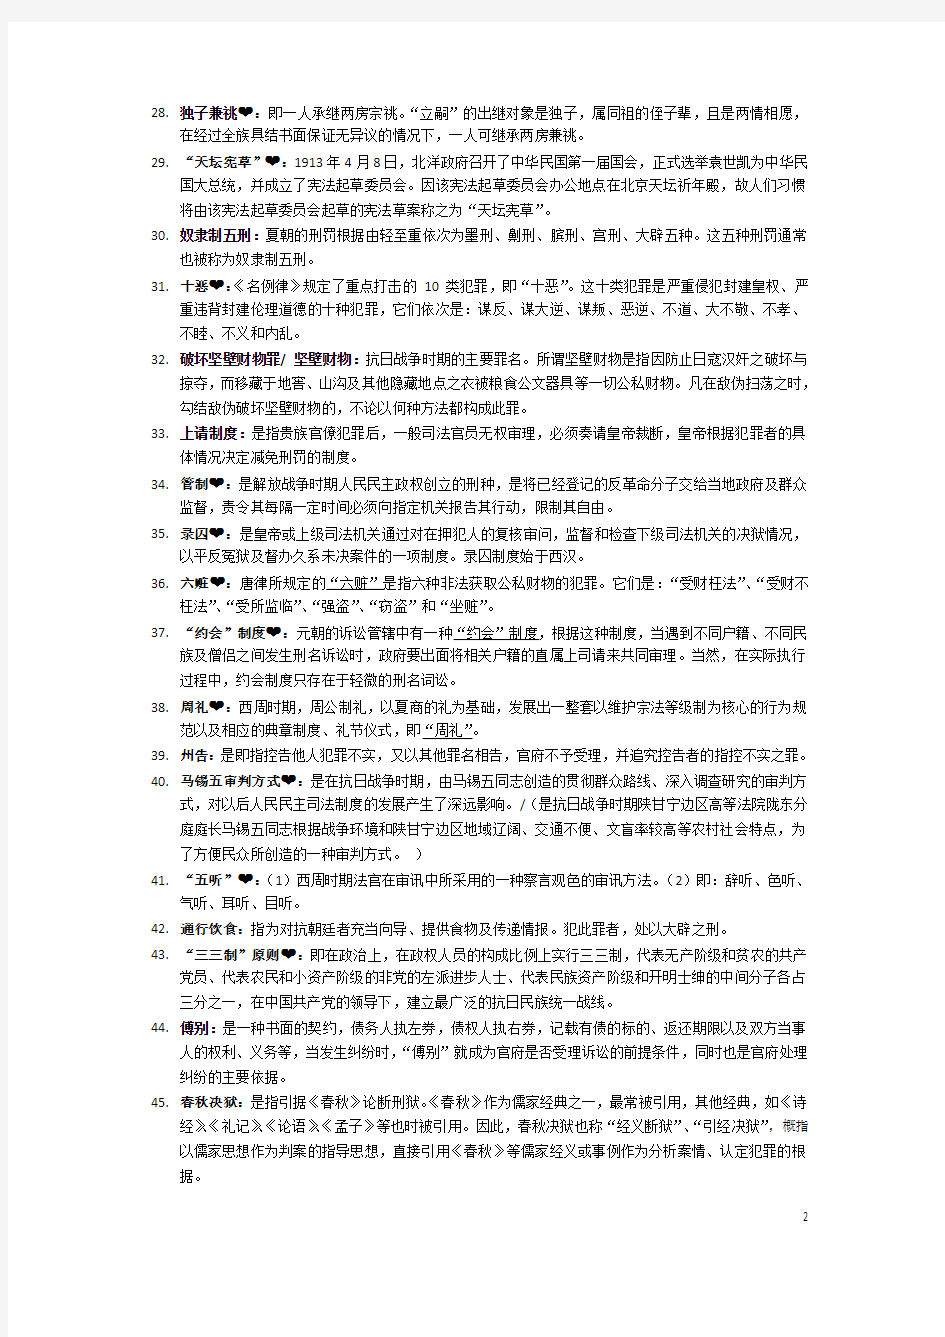 自学考试中国法制史 名词解释9分